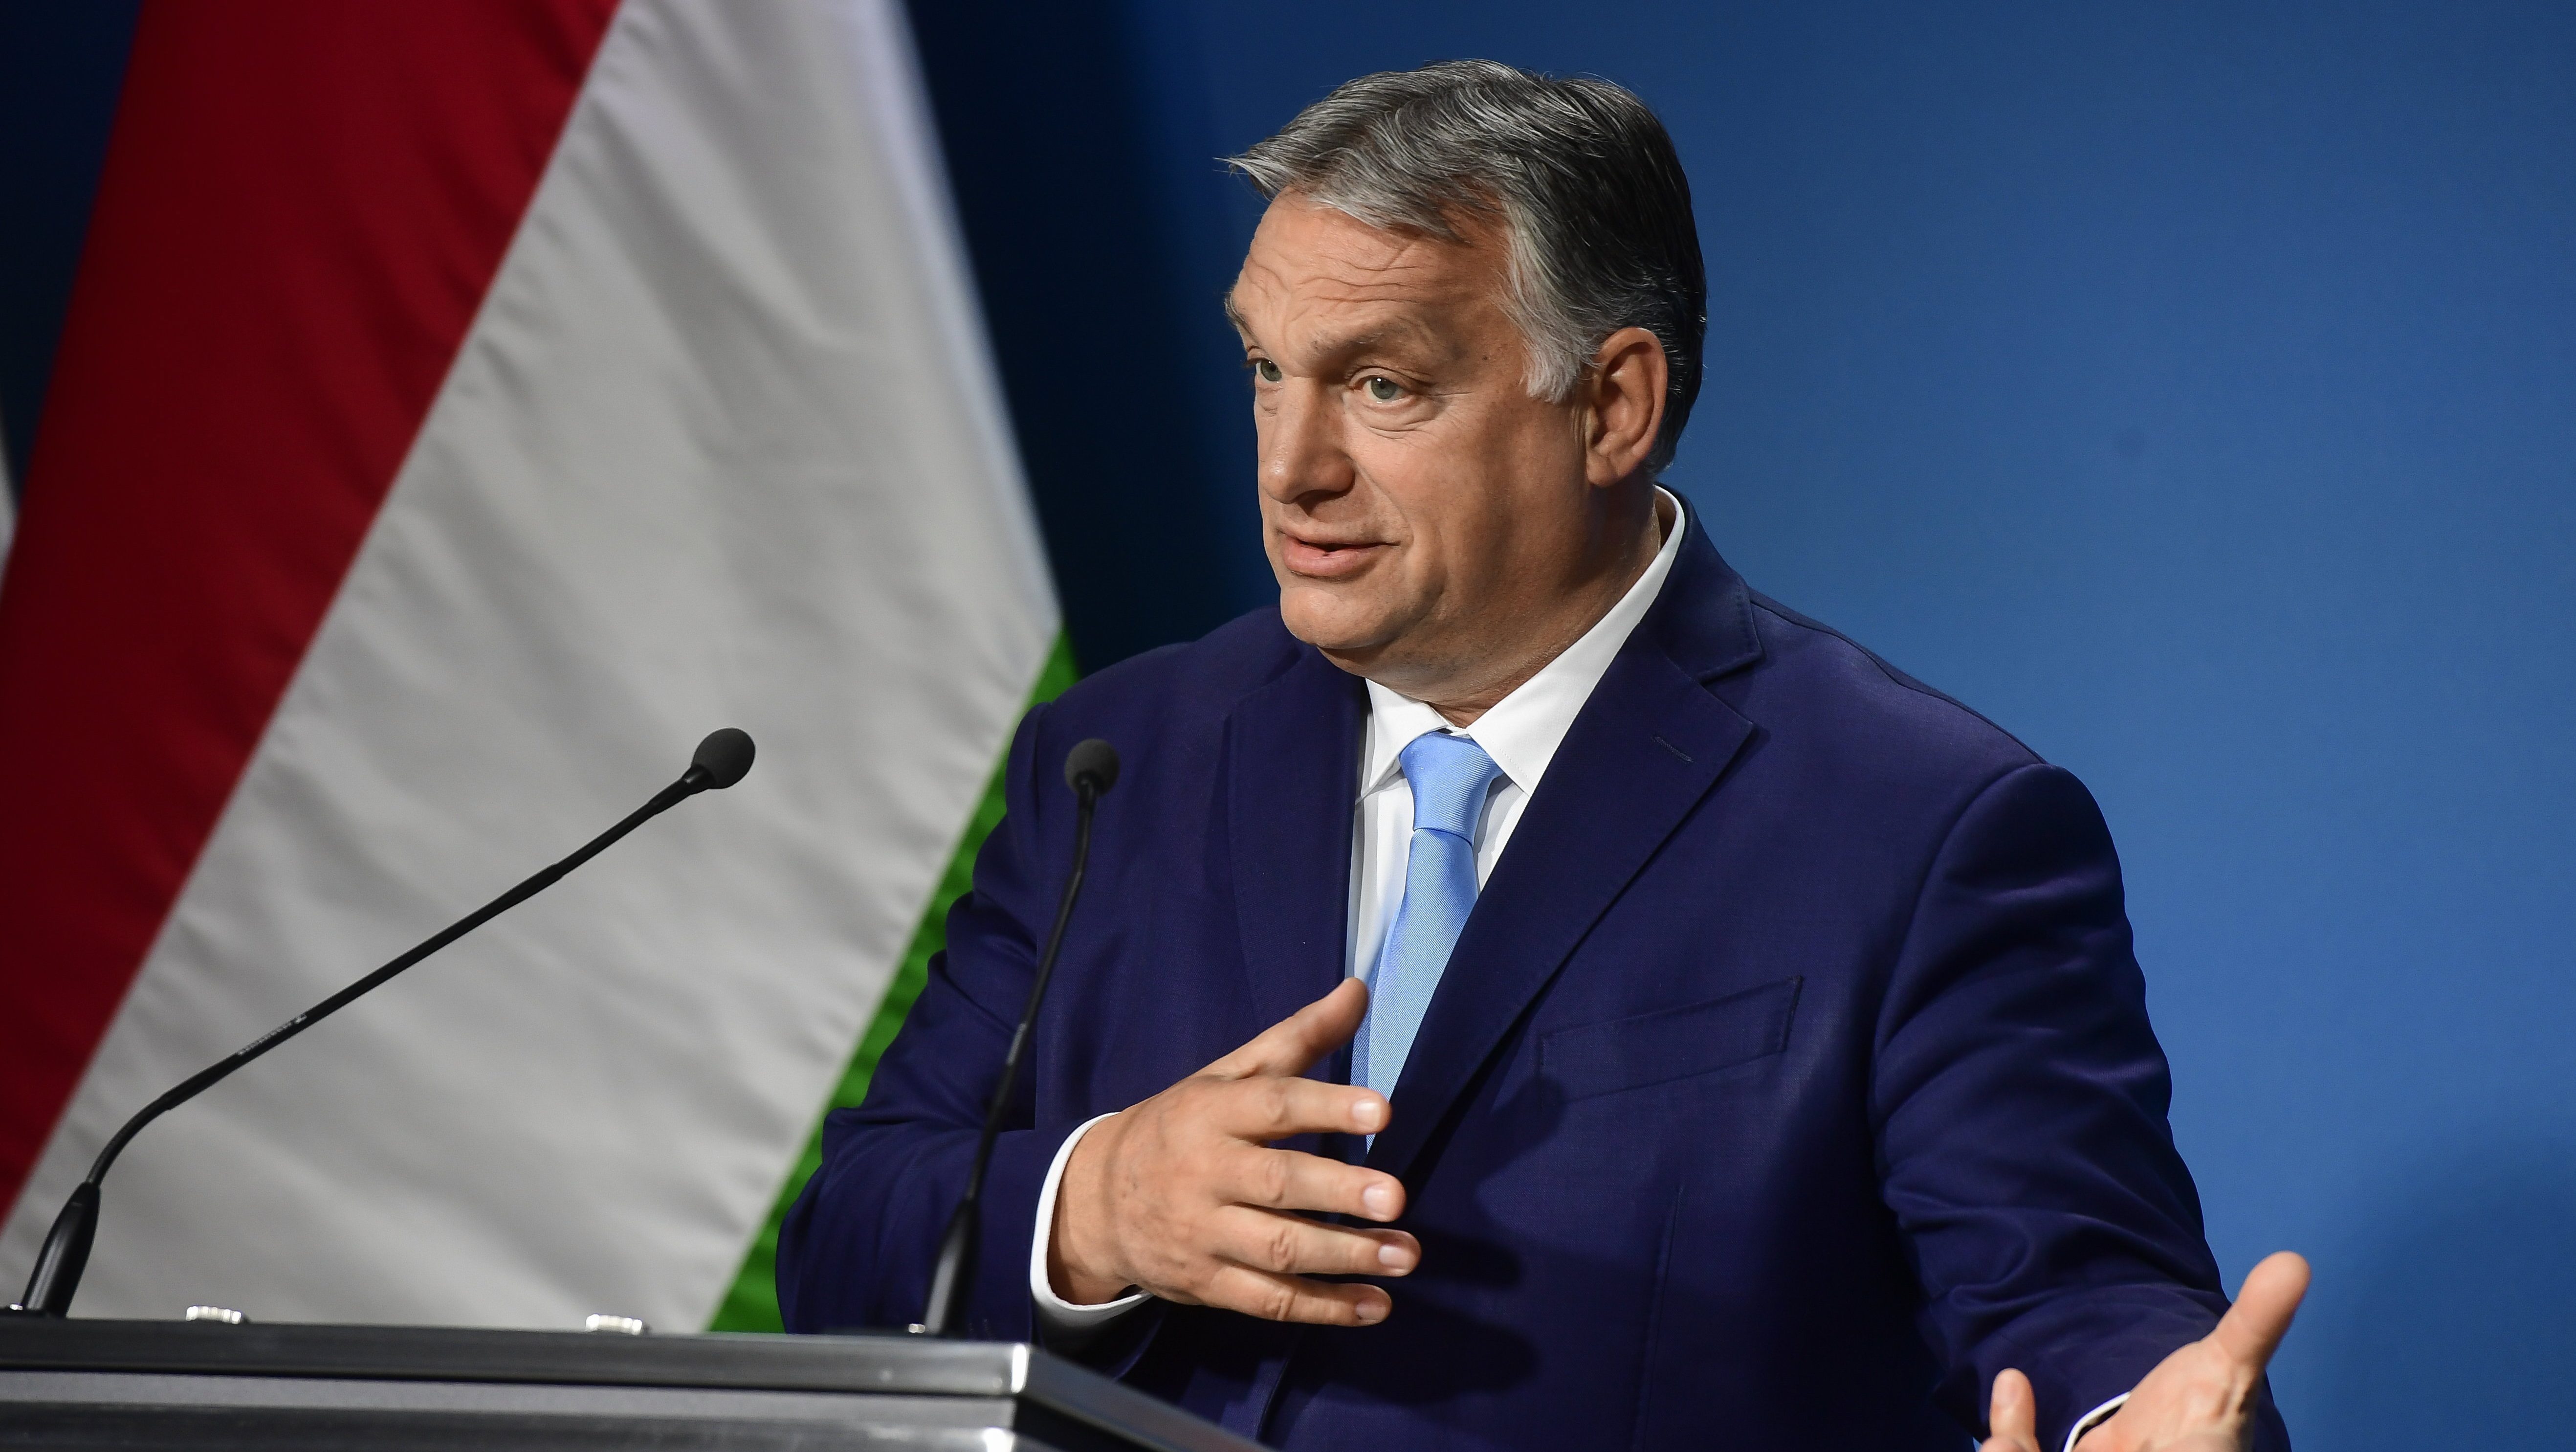 Mérték Médiaelemző: Orbán olyasmiről tartana népszavazást, amit már rég törvények szabályoznak